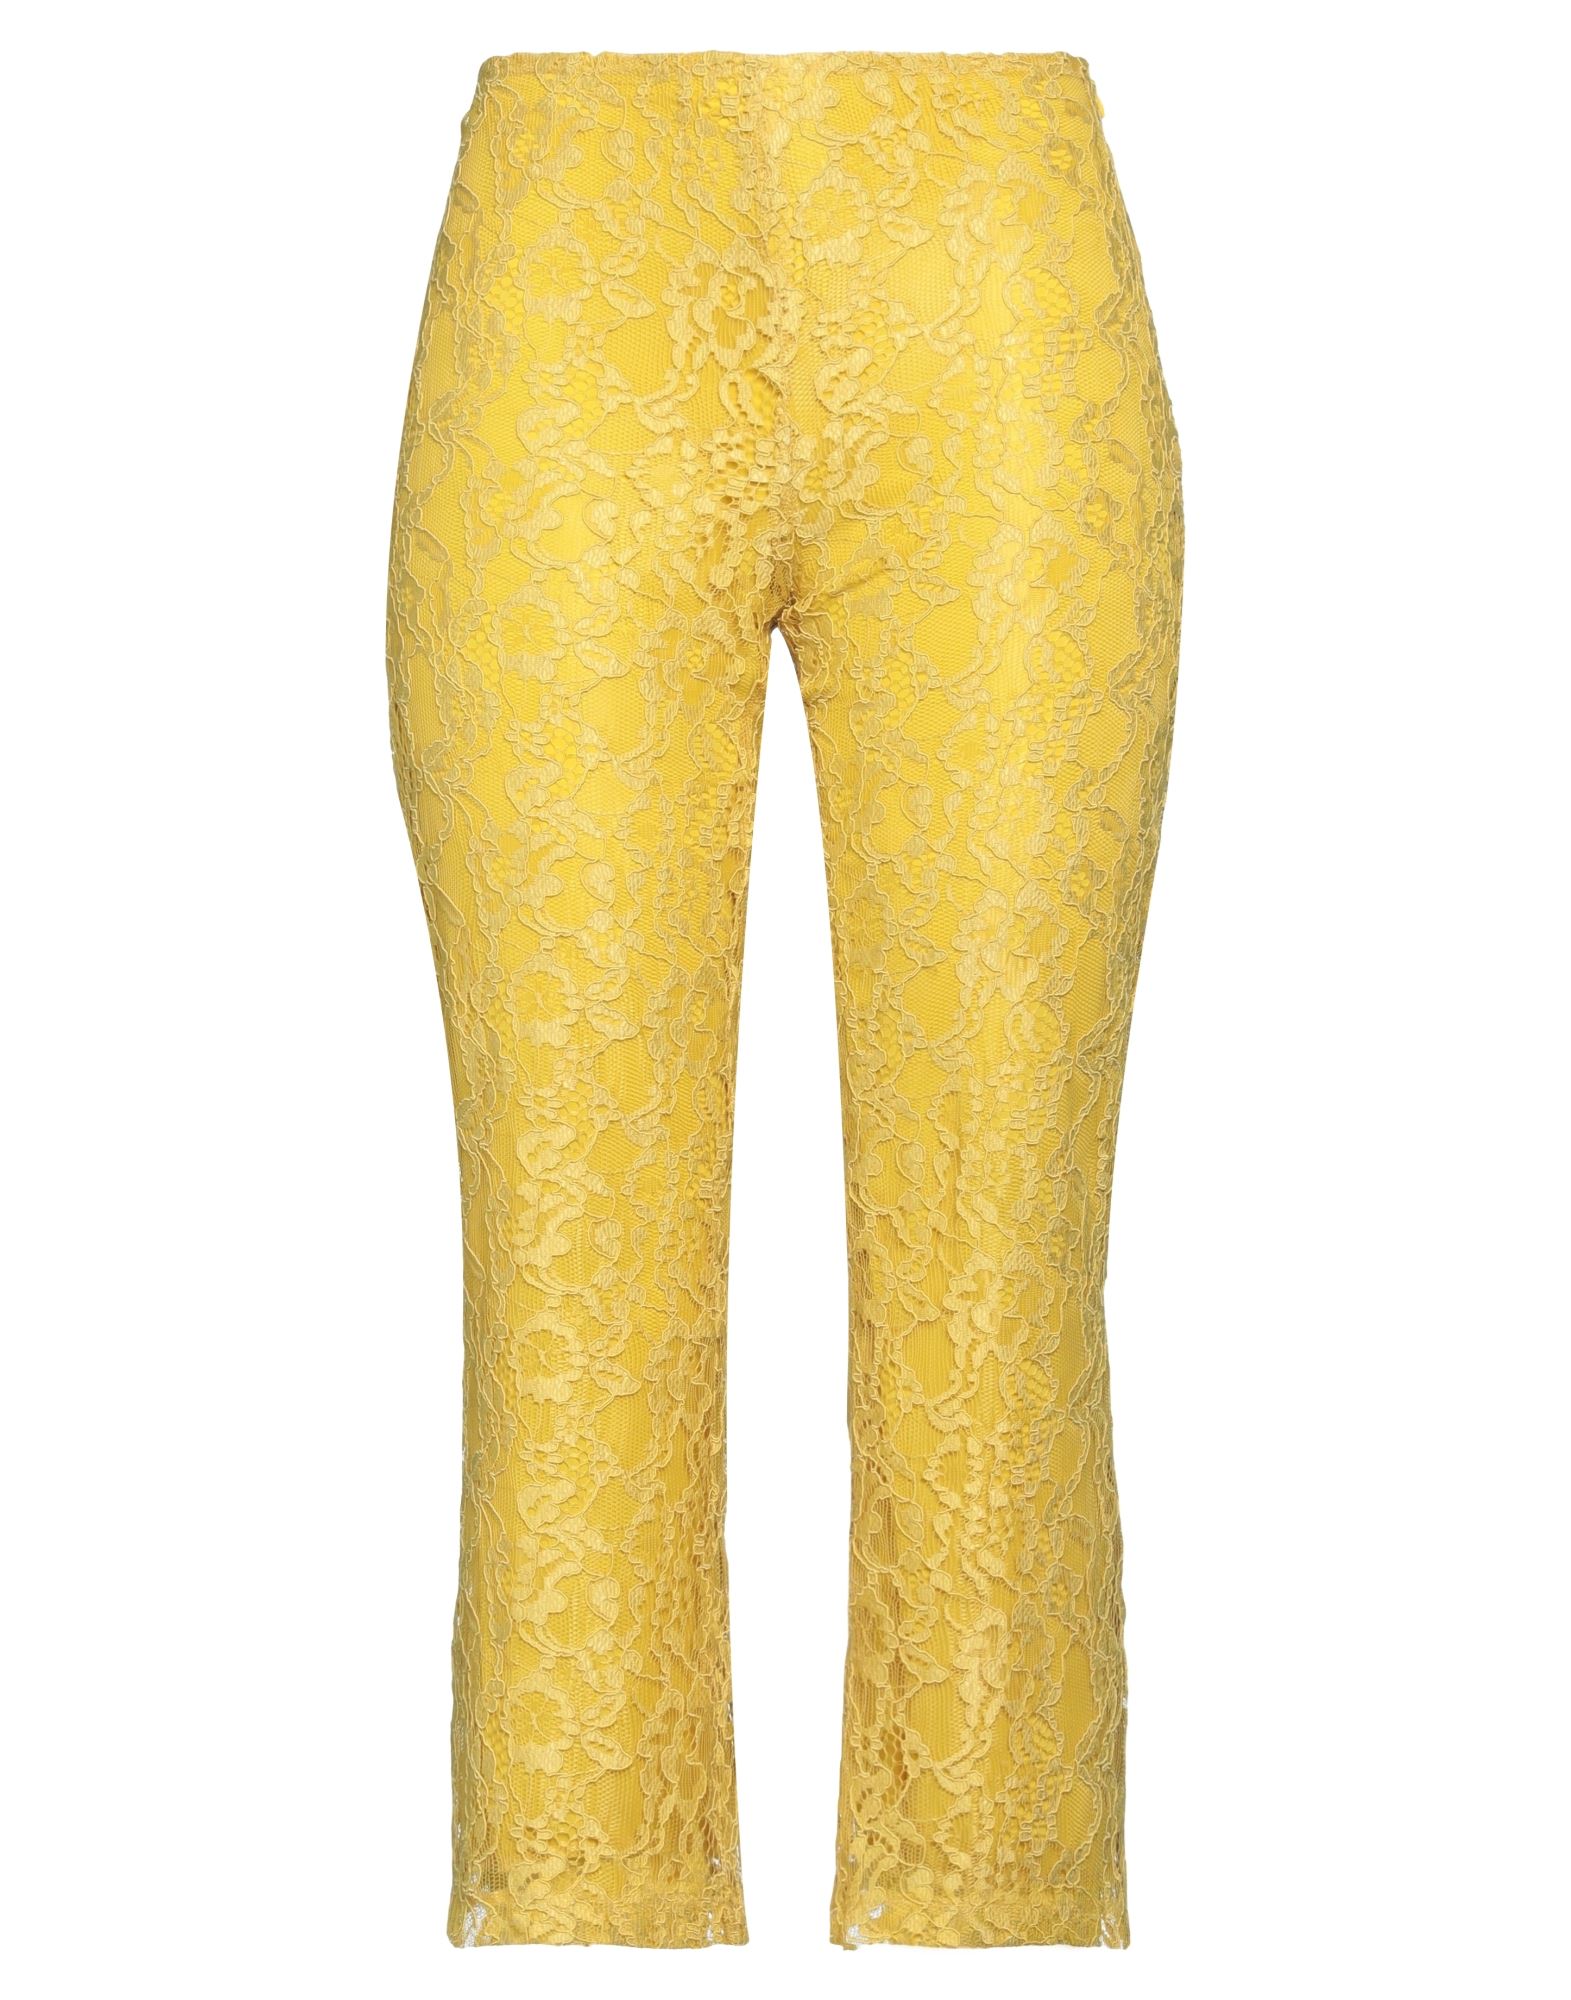 Kaos Woman Pants Yellow Size 4 Polyester